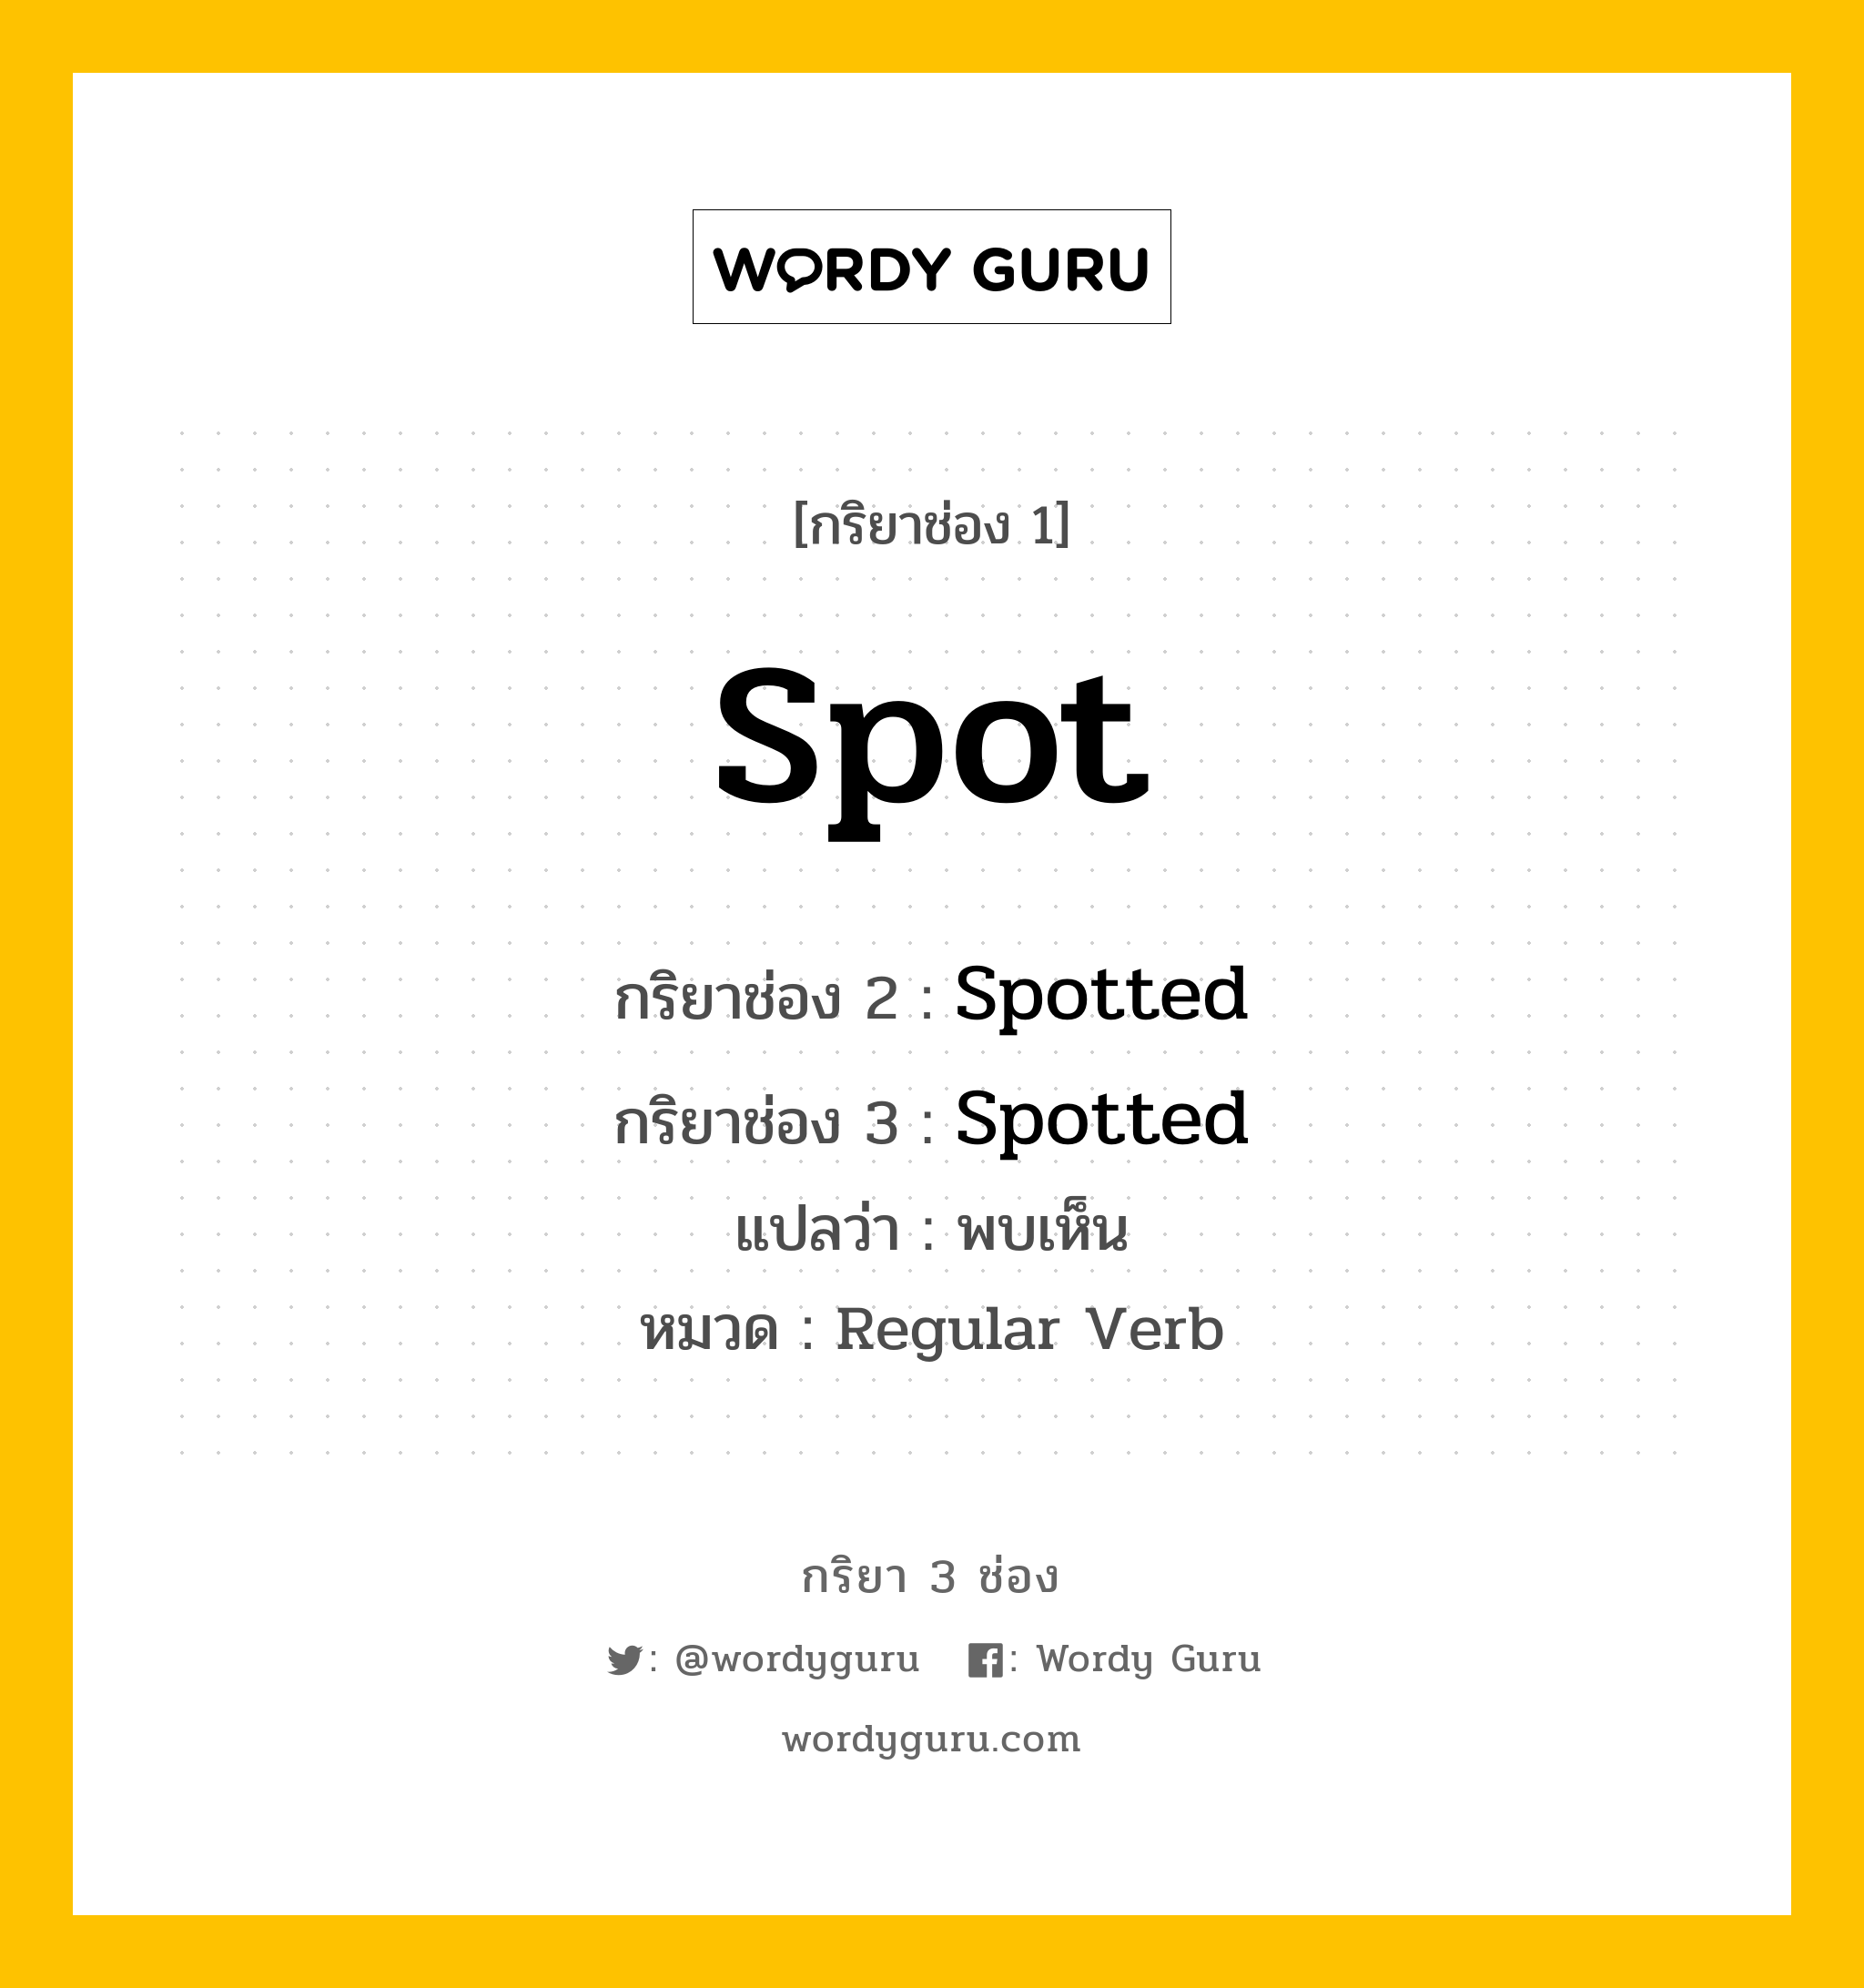 กริยา 3 ช่อง: Spot ช่อง 2 Spot ช่อง 3 คืออะไร, กริยาช่อง 1 Spot กริยาช่อง 2 Spotted กริยาช่อง 3 Spotted แปลว่า พบเห็น หมวด Regular Verb หมวด Regular Verb